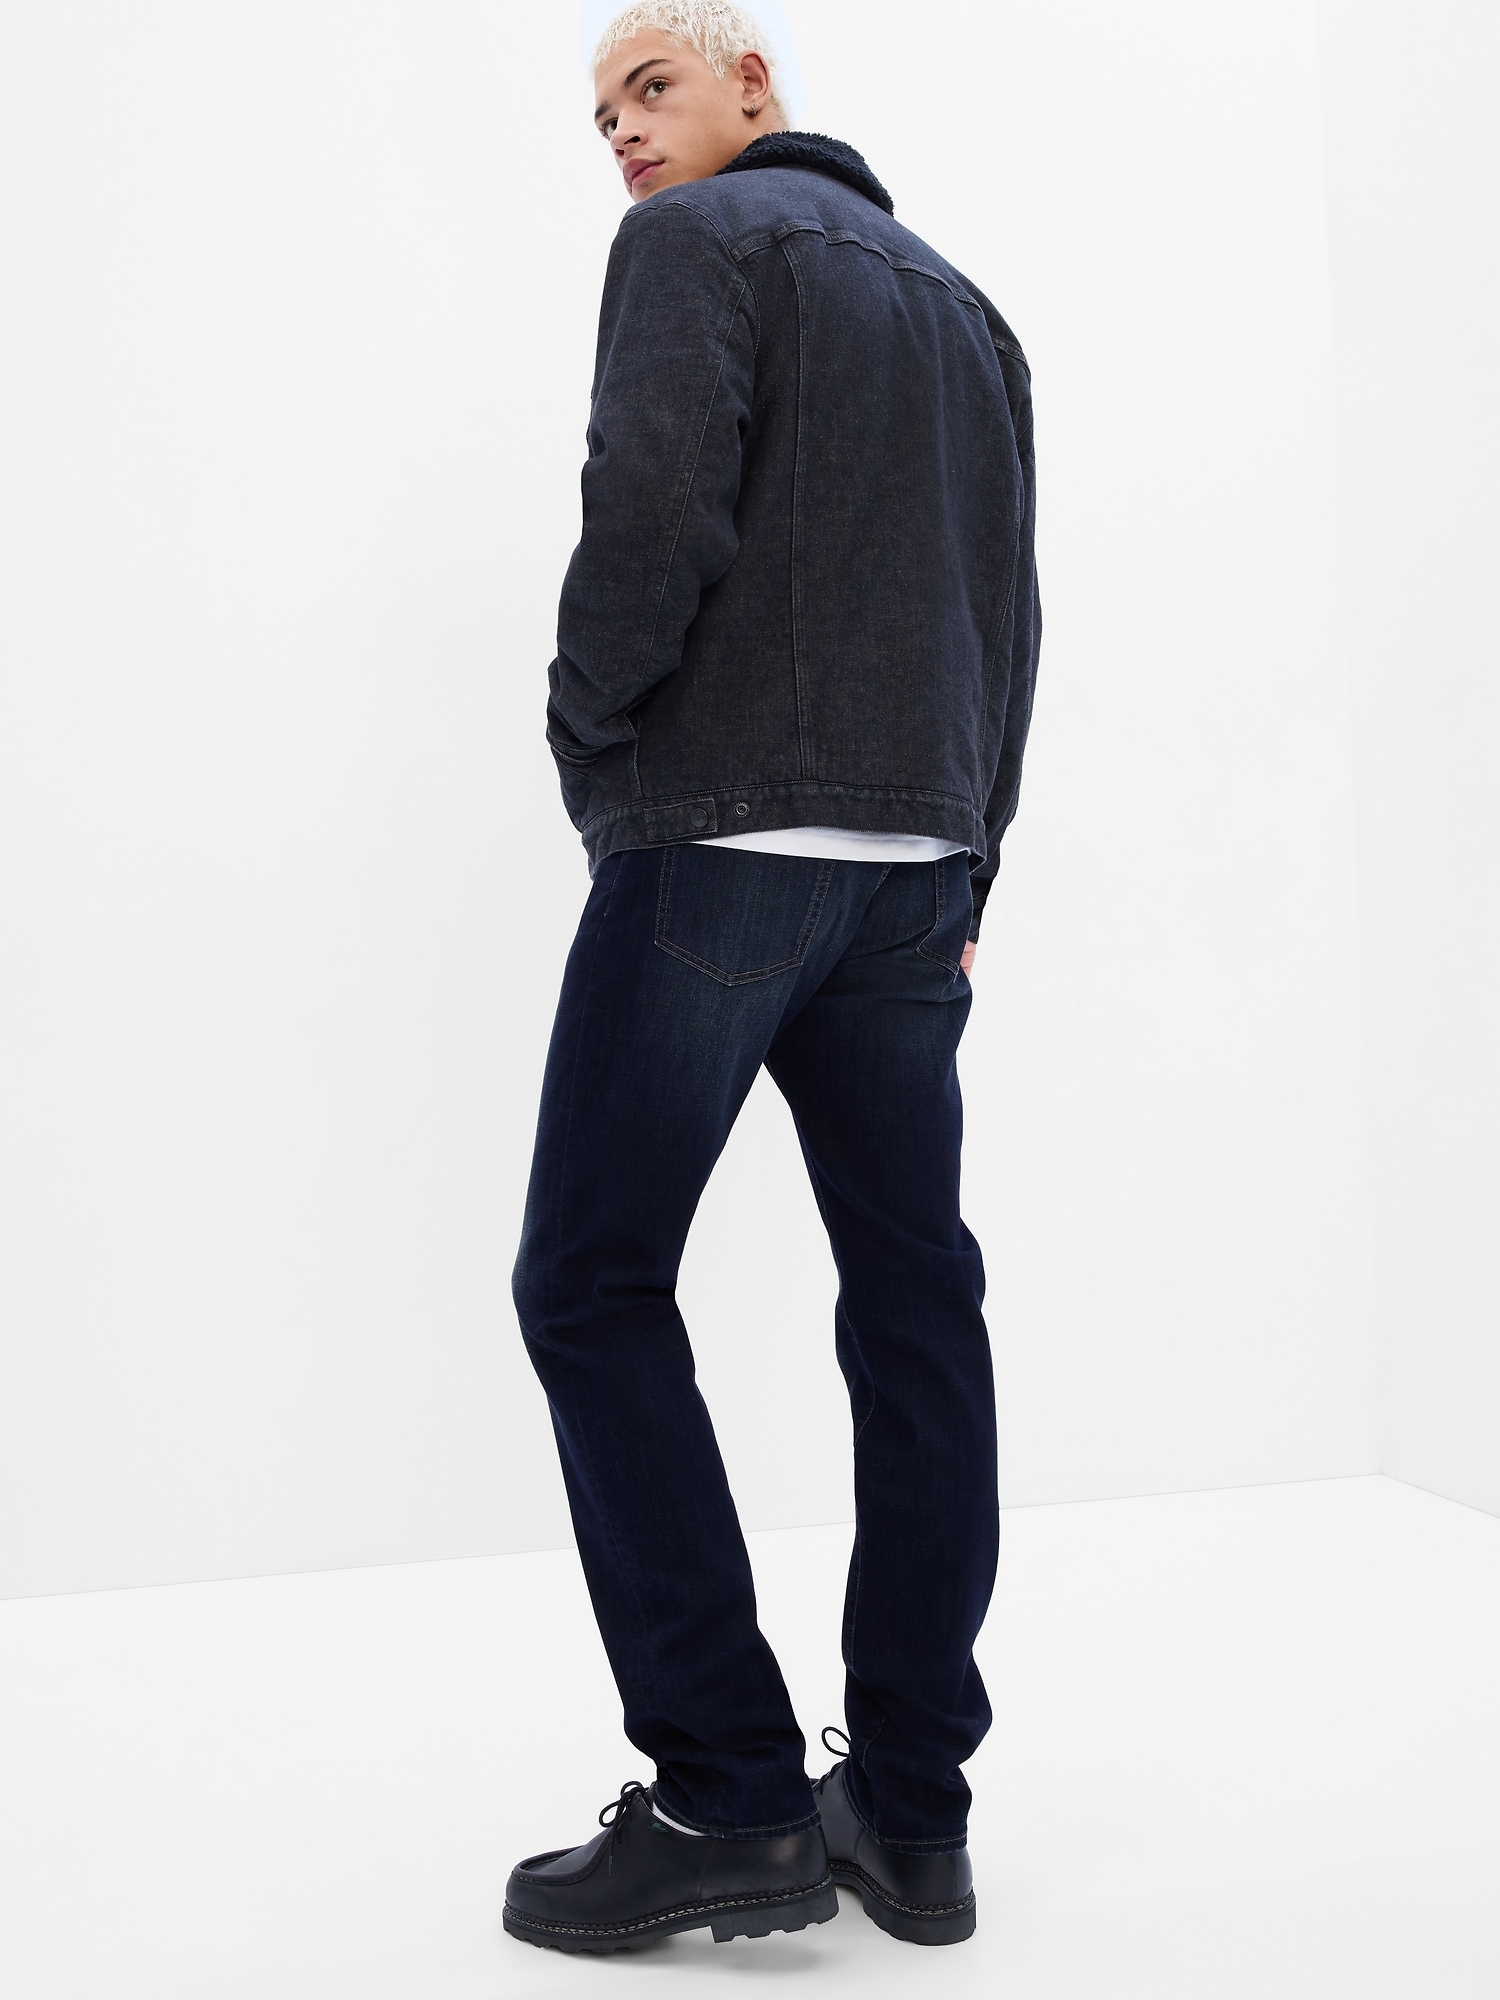 Slim GapFlex Soft Wear Jeans with Washwell | Gap Factory